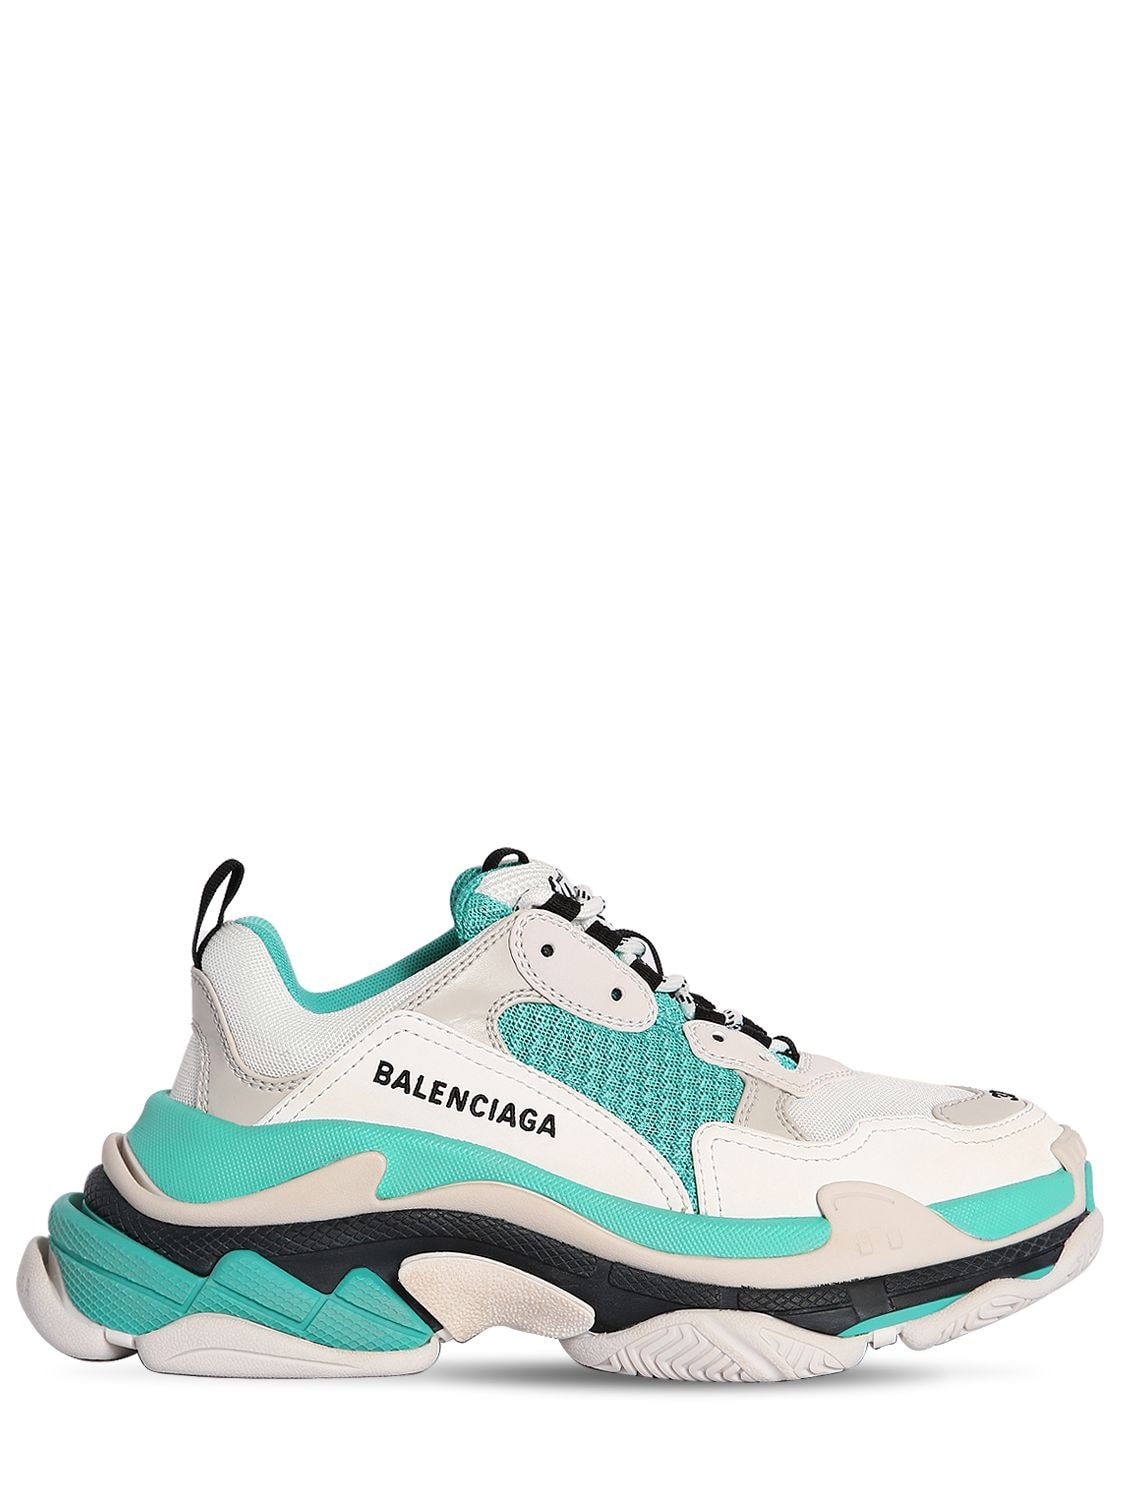 Balenciaga Triple s Spor Ayakkabıları 656686w06g011001